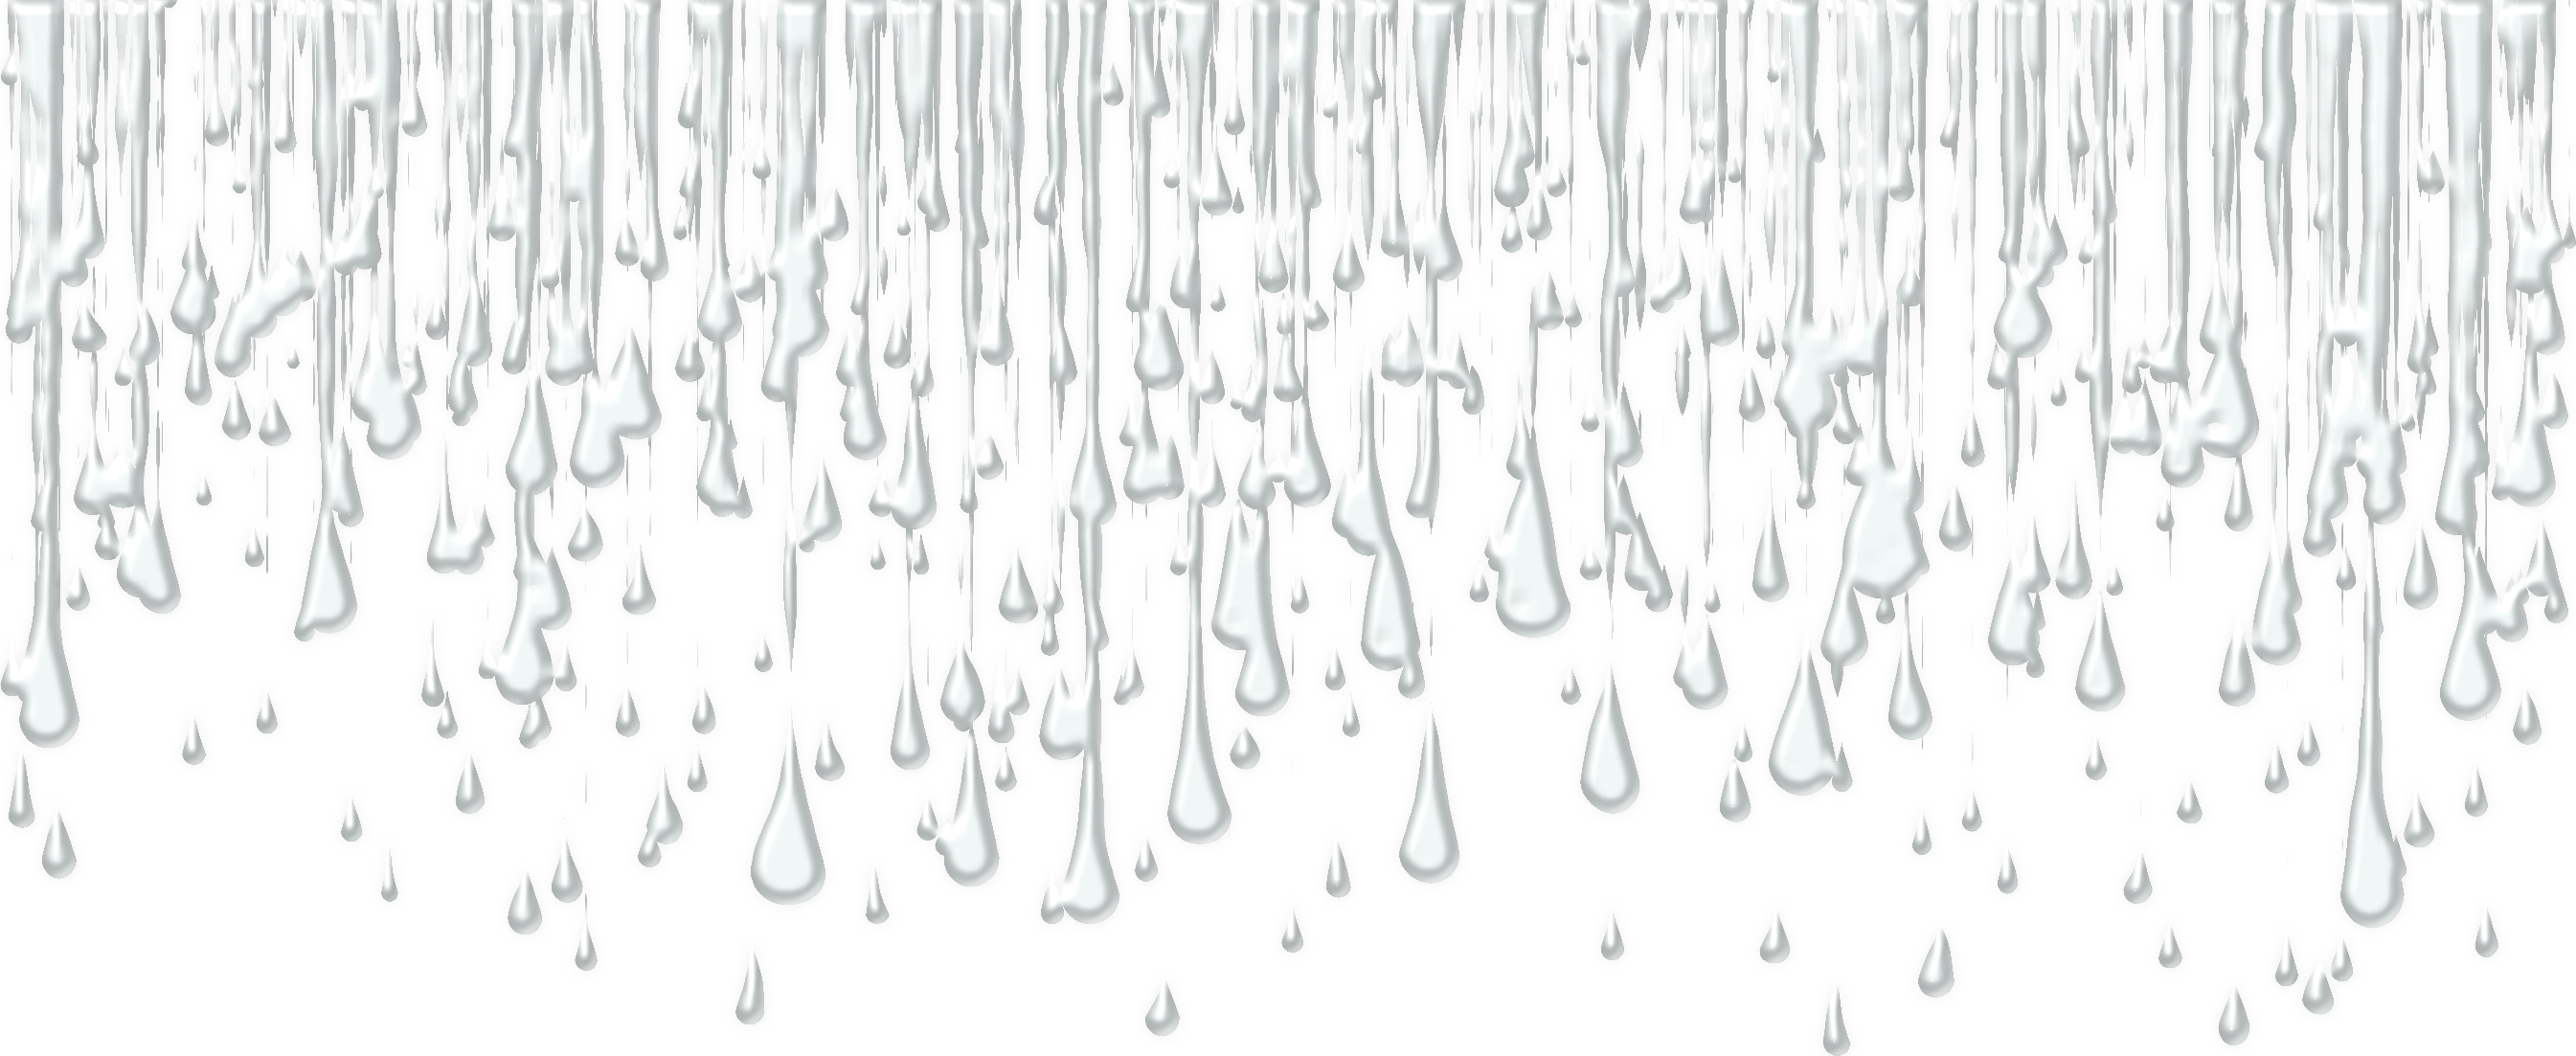 Следы дождя текст. Дождь на прозрачном фоне. Стекающие капли. Капли на стекле. Потеки воды.